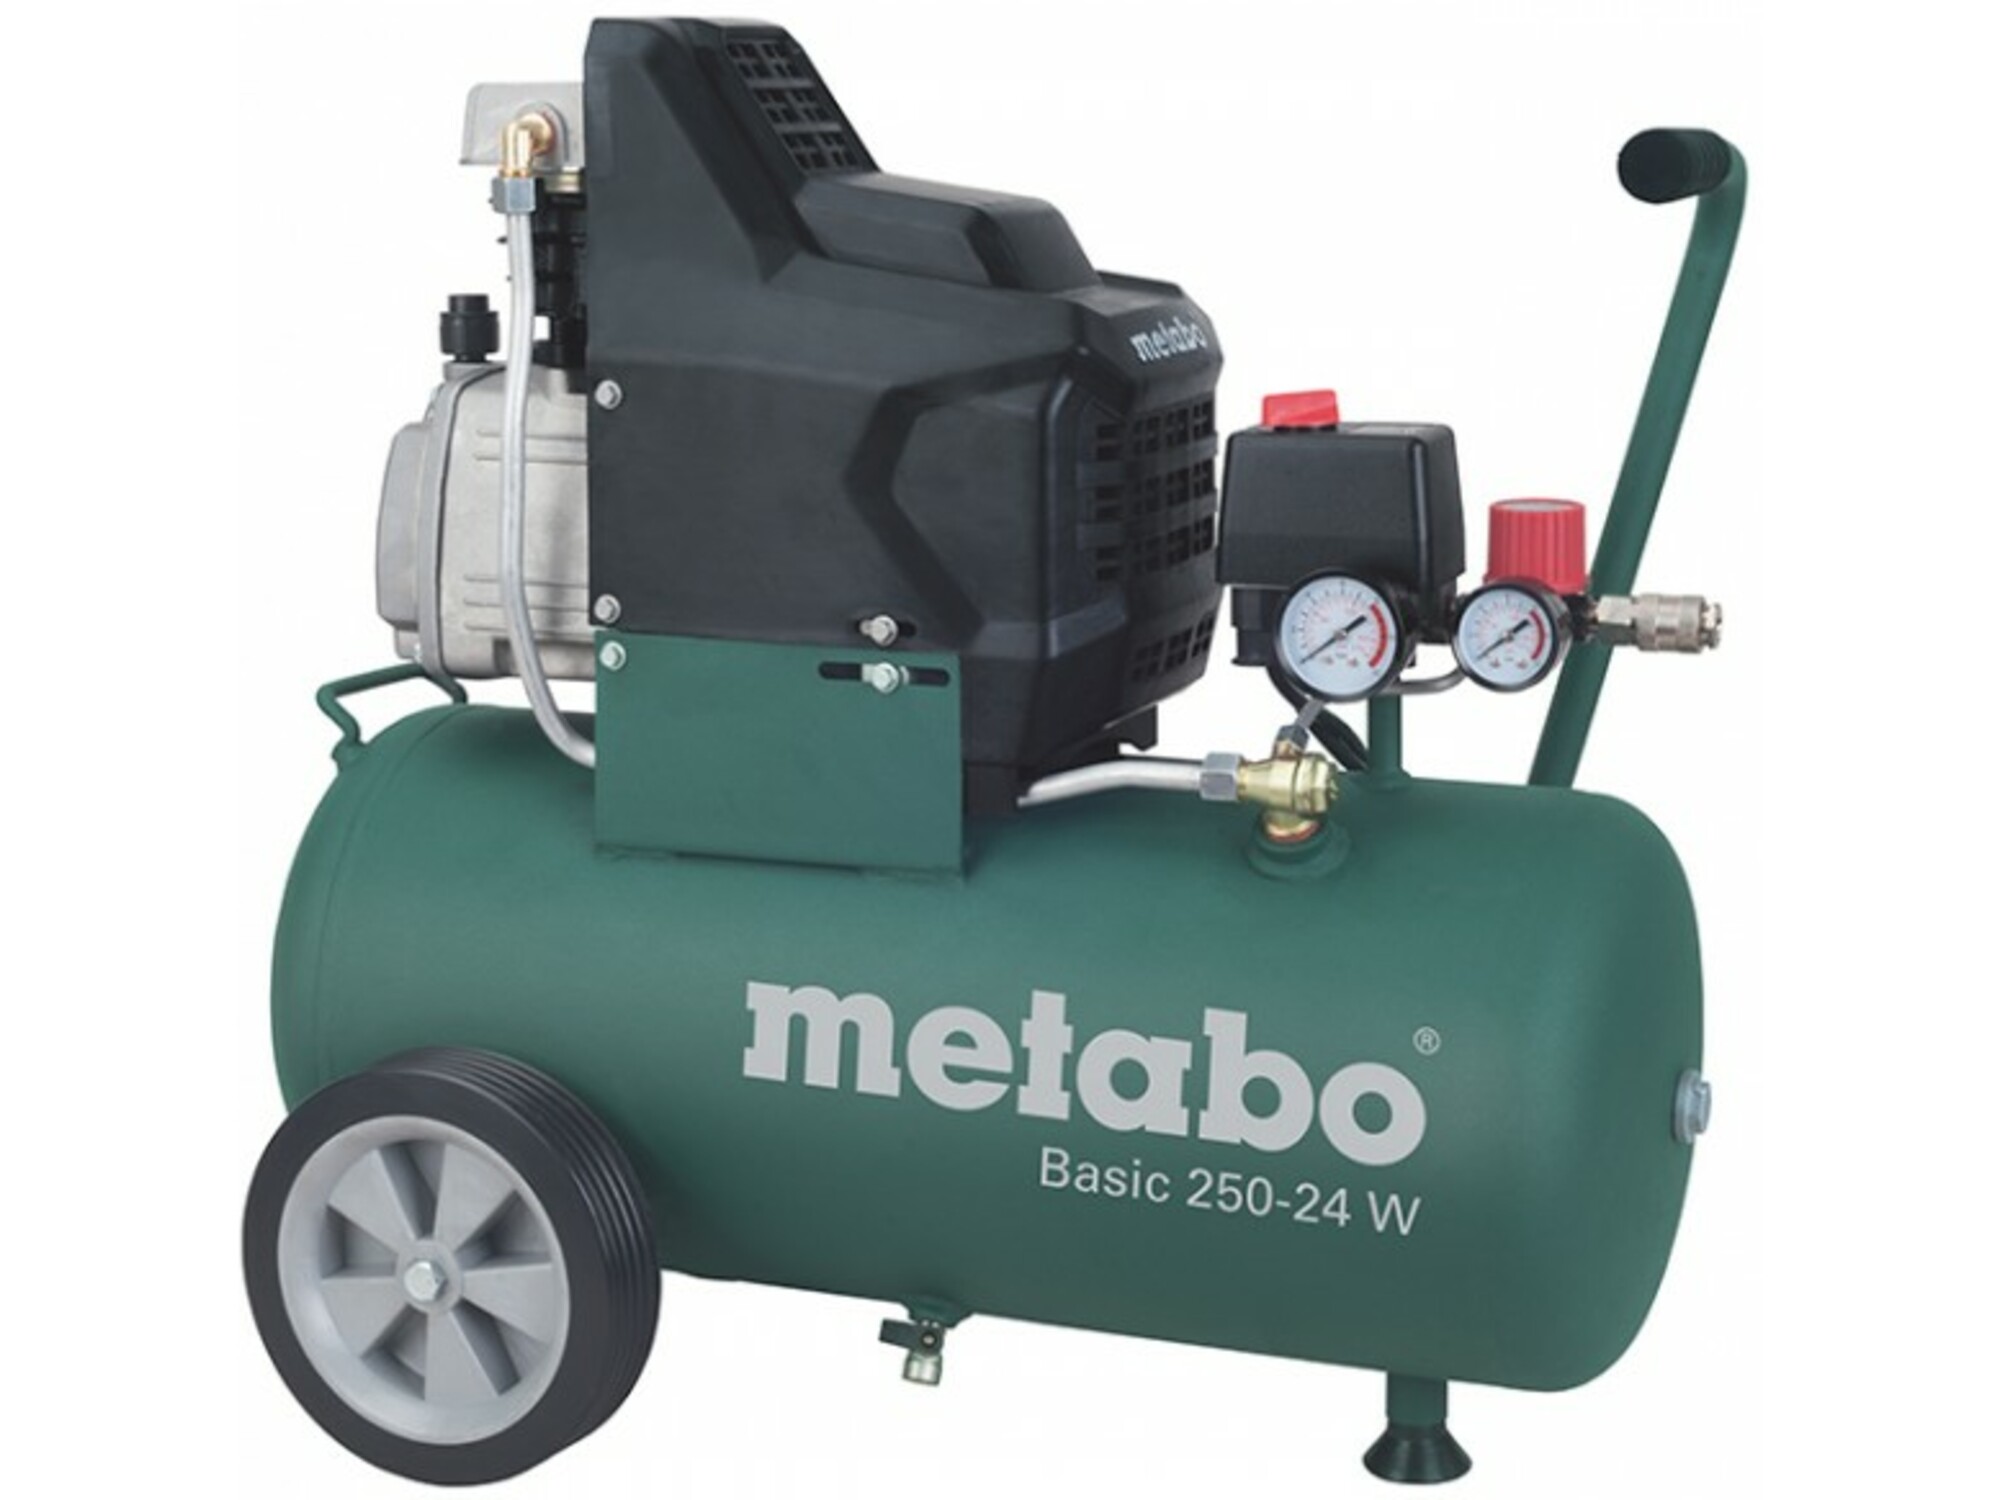 METABO kompresor Basic 250-24 W OF 601532000